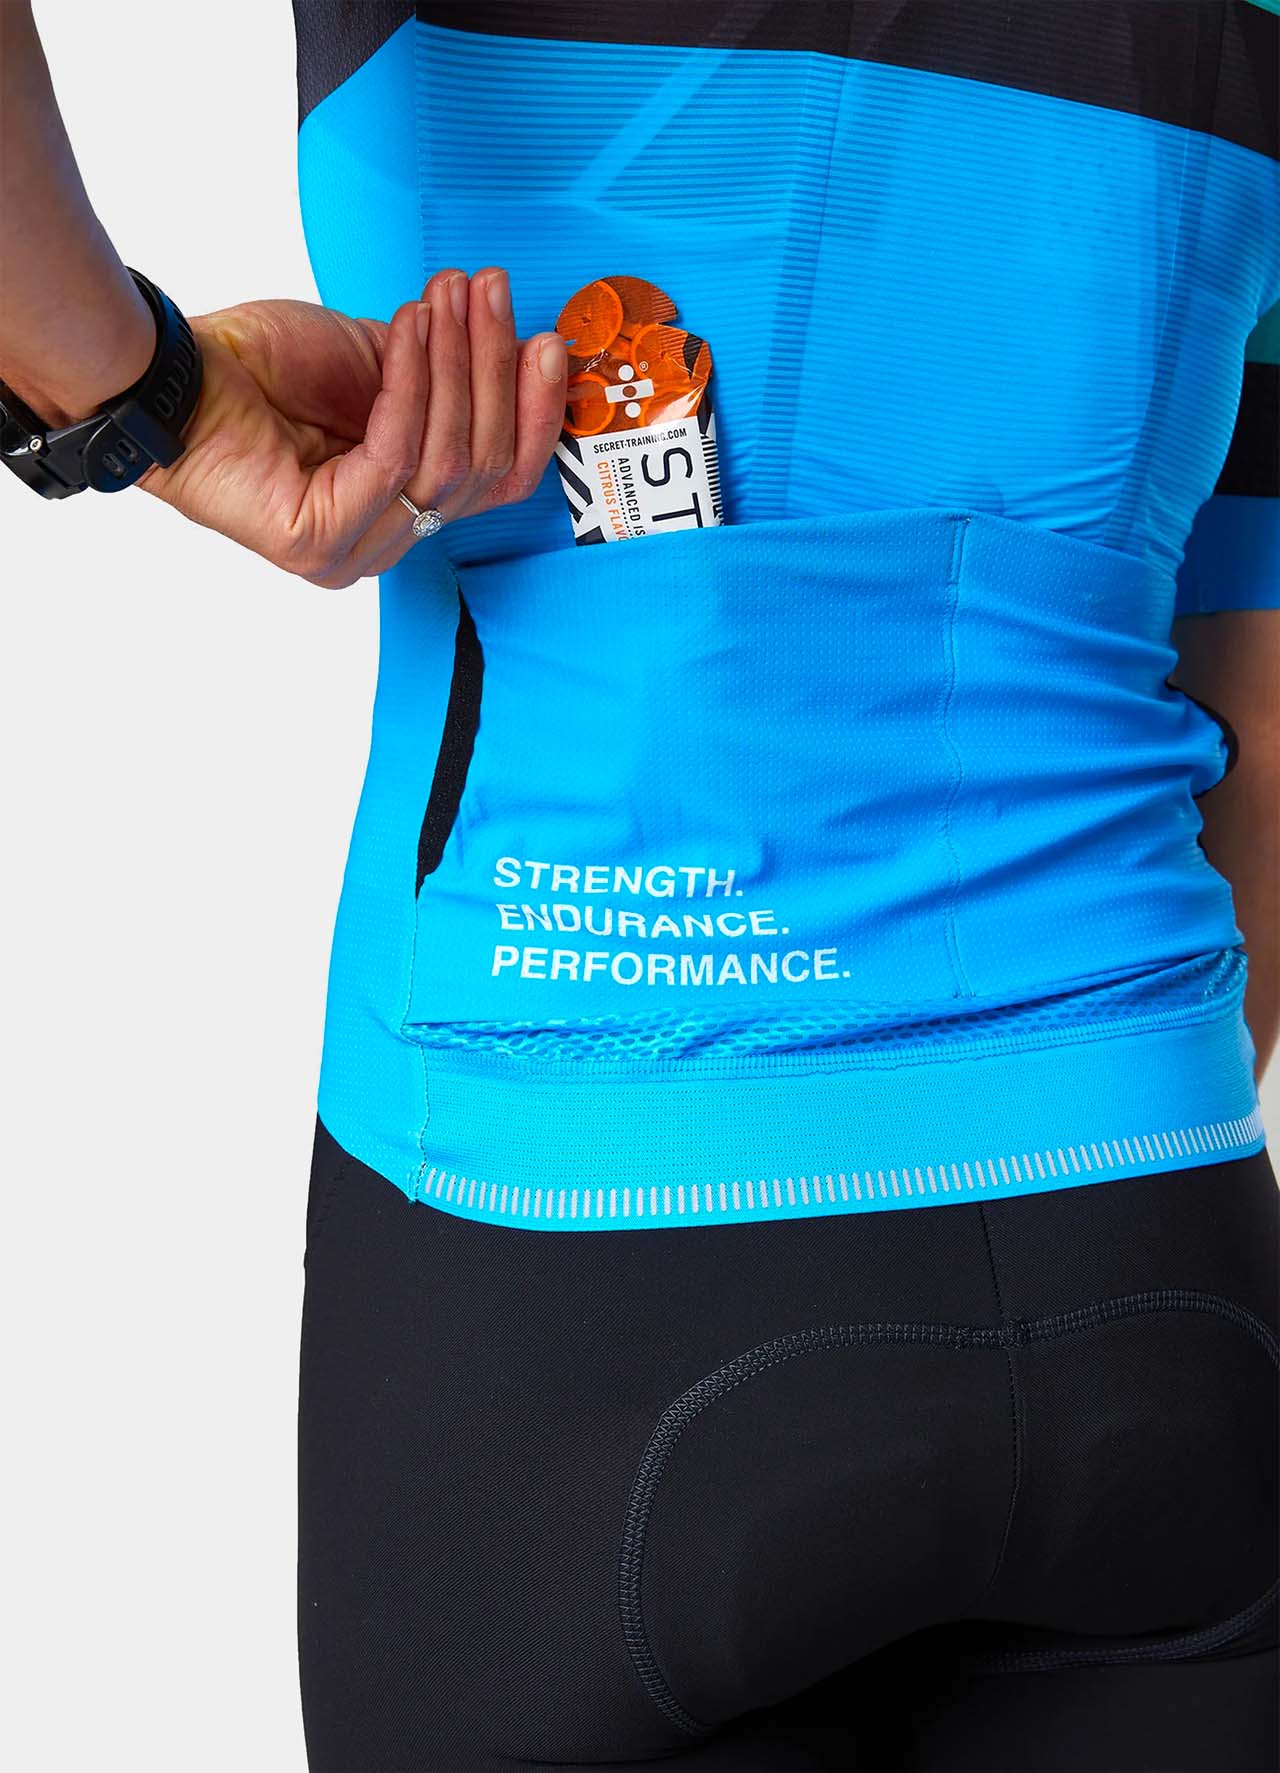 TRI-FIT SYKL PRO Women's Short Sleeve Cycling Jersey - Earth - Rear Pocket